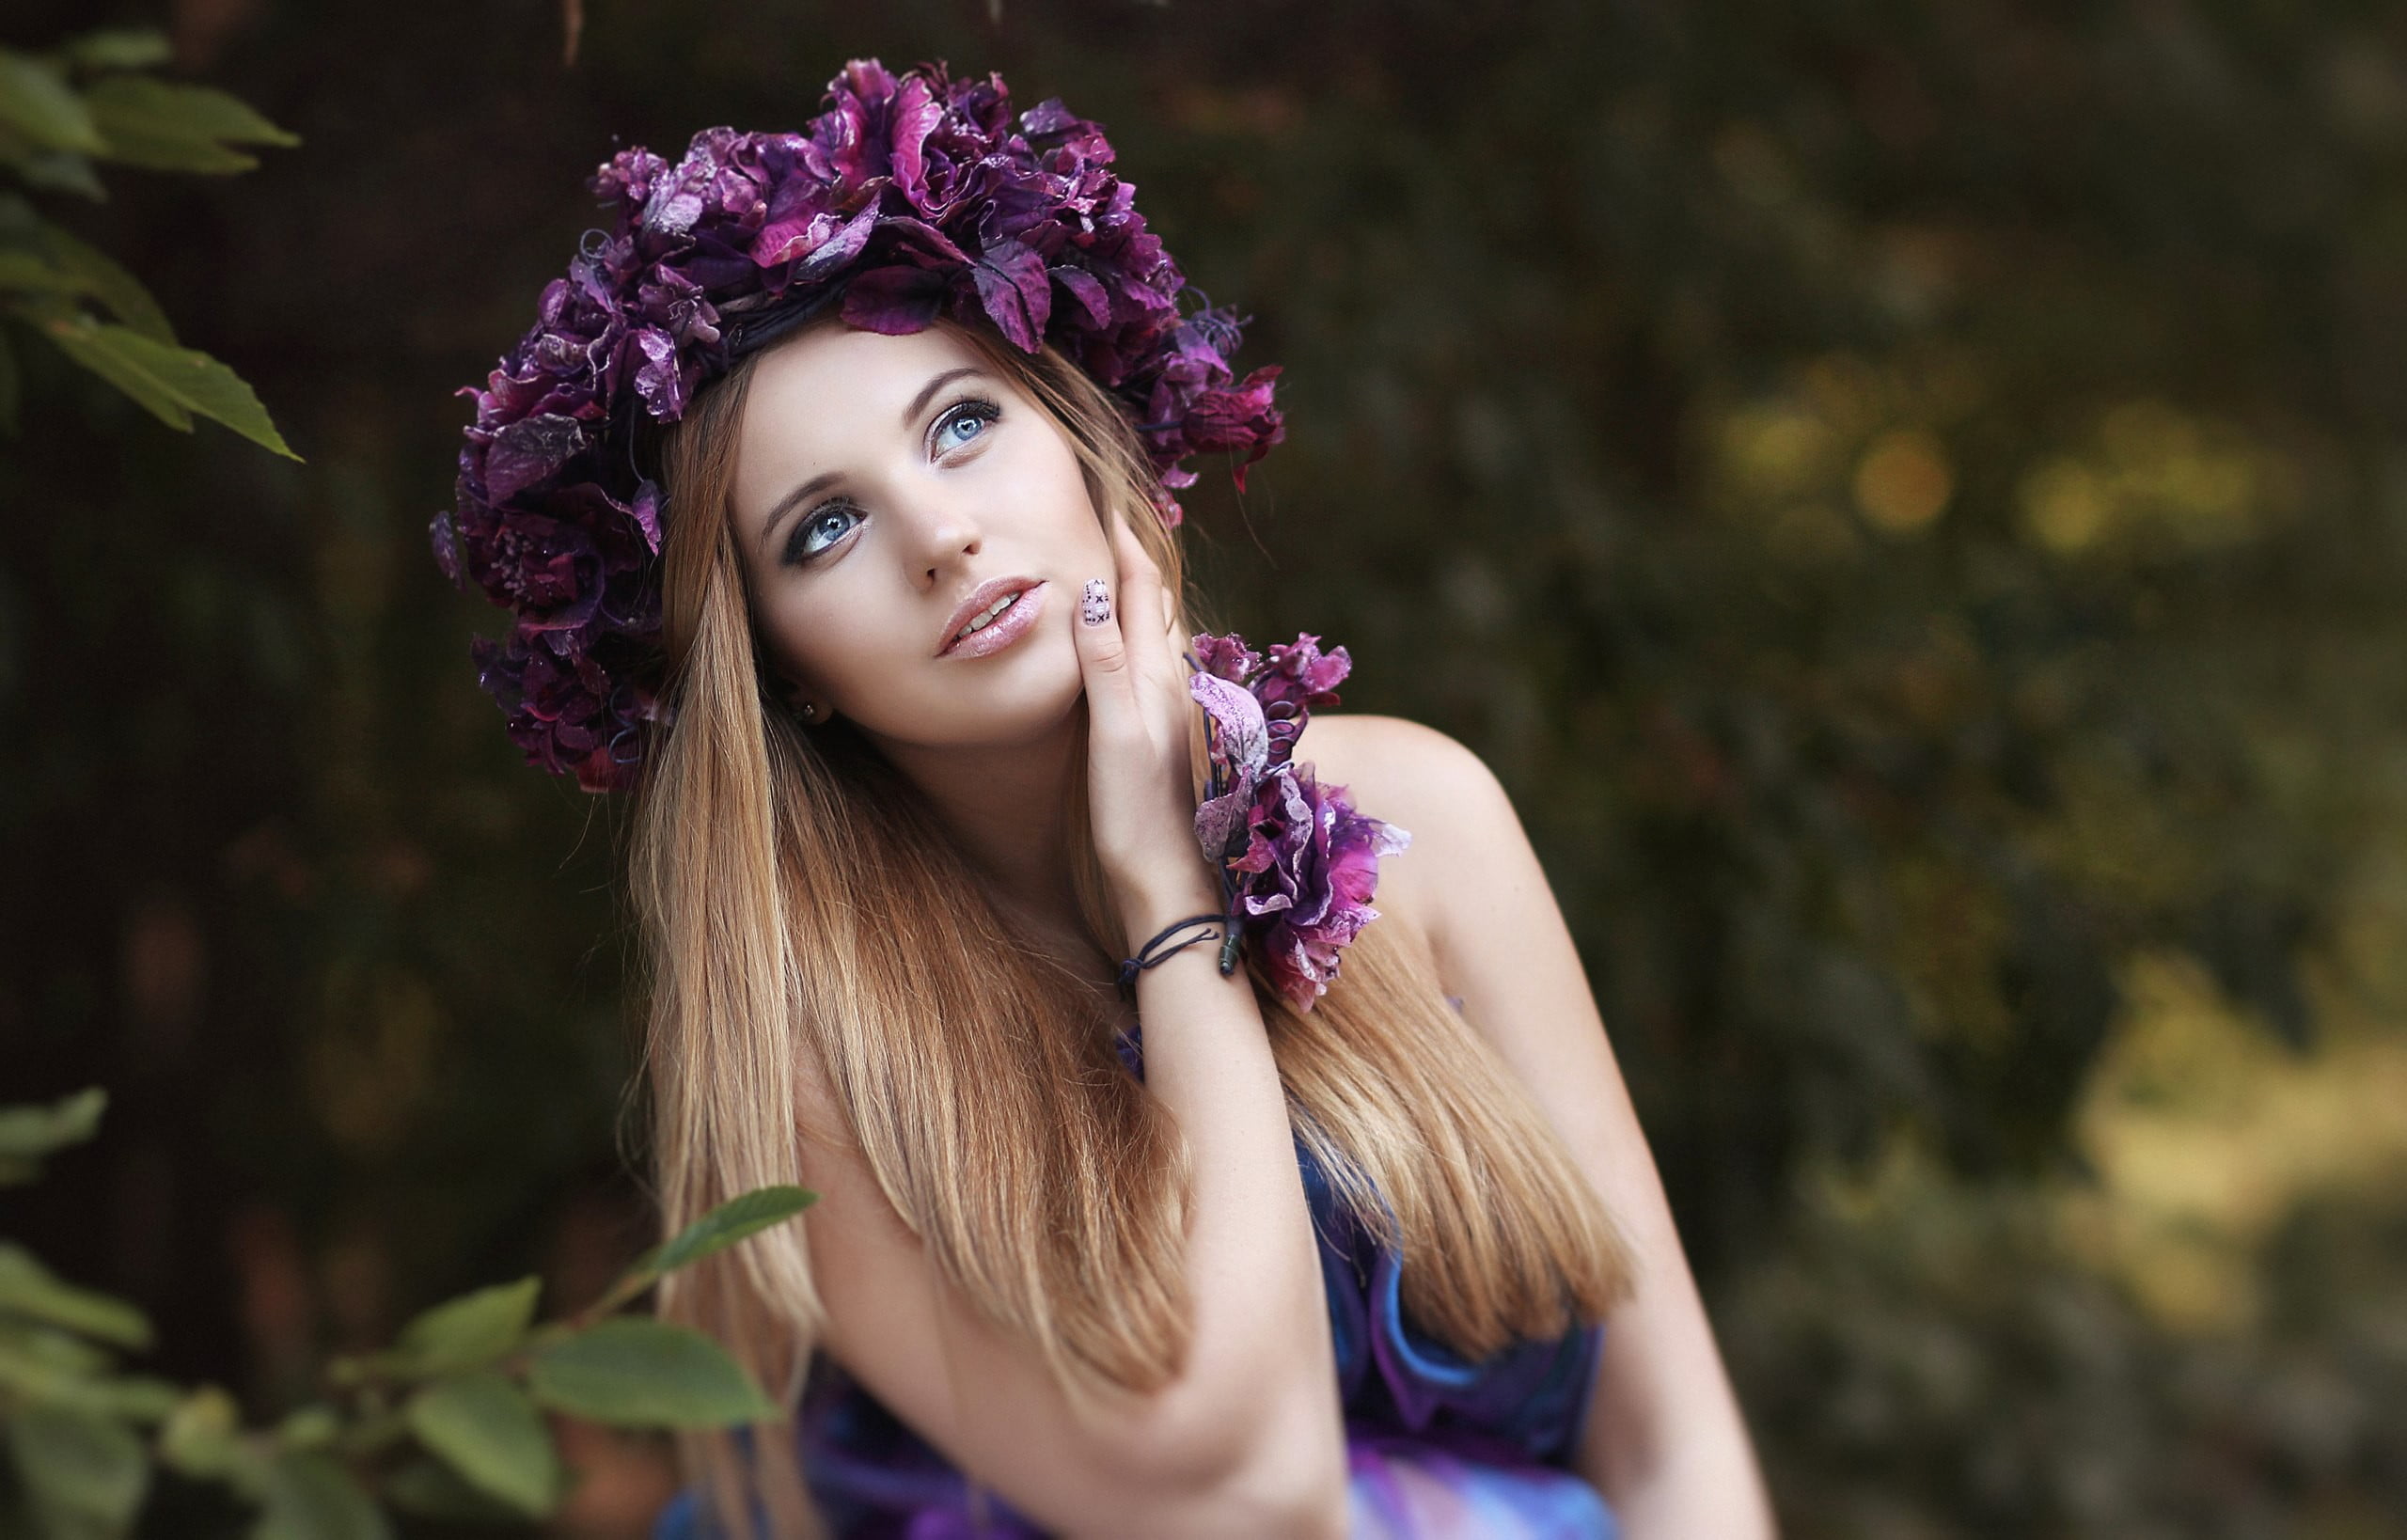 women's purple petaled flower crown, woman wearing purple headdress